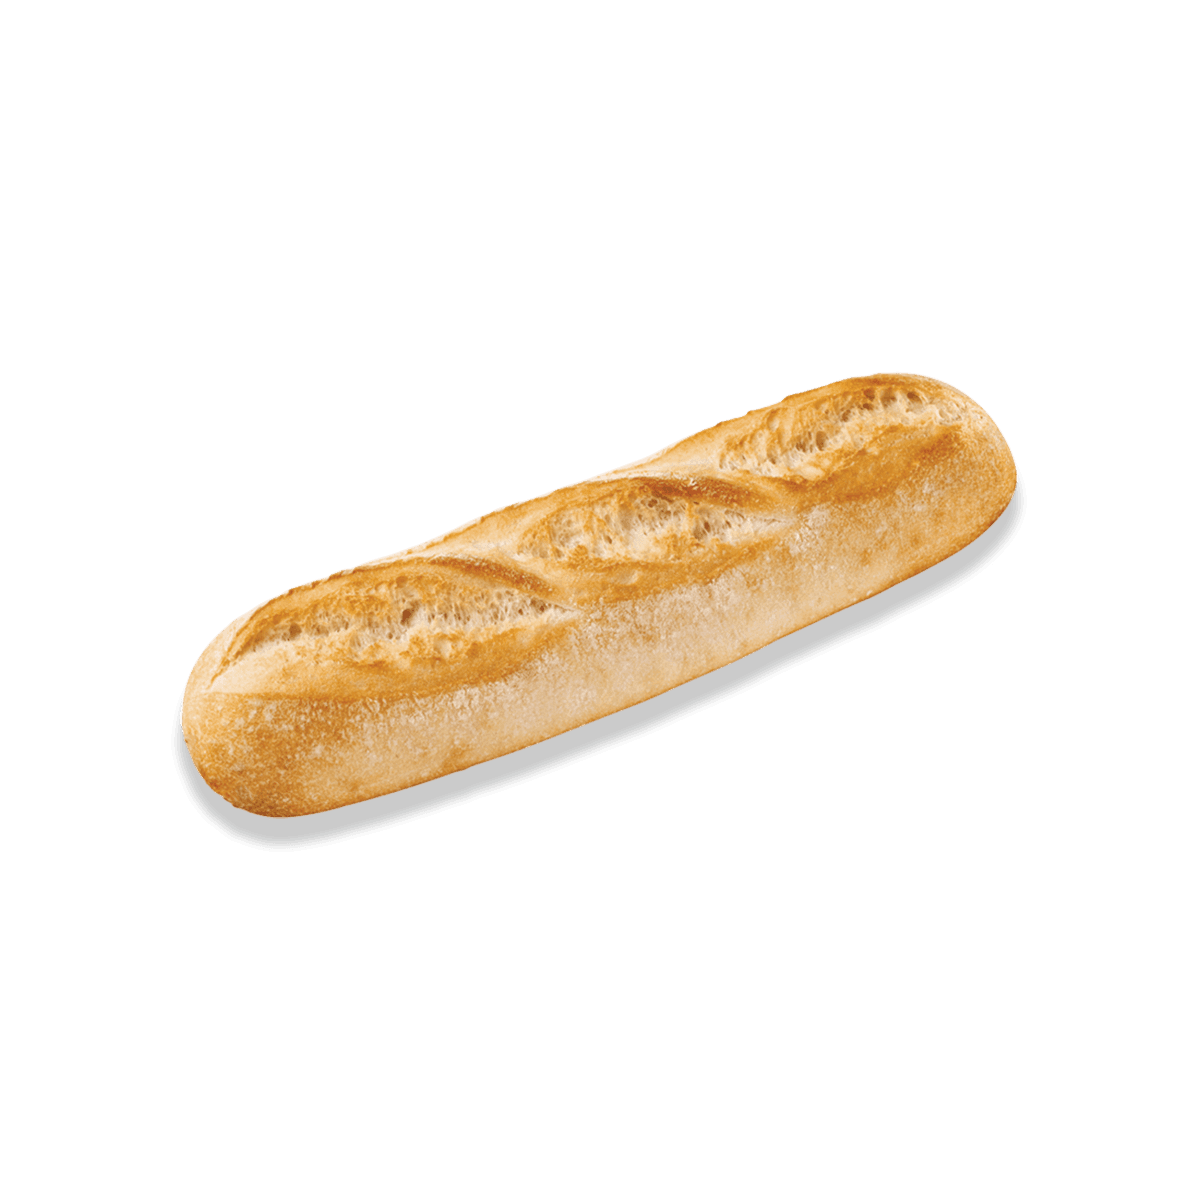 demi-baguette bread on the side